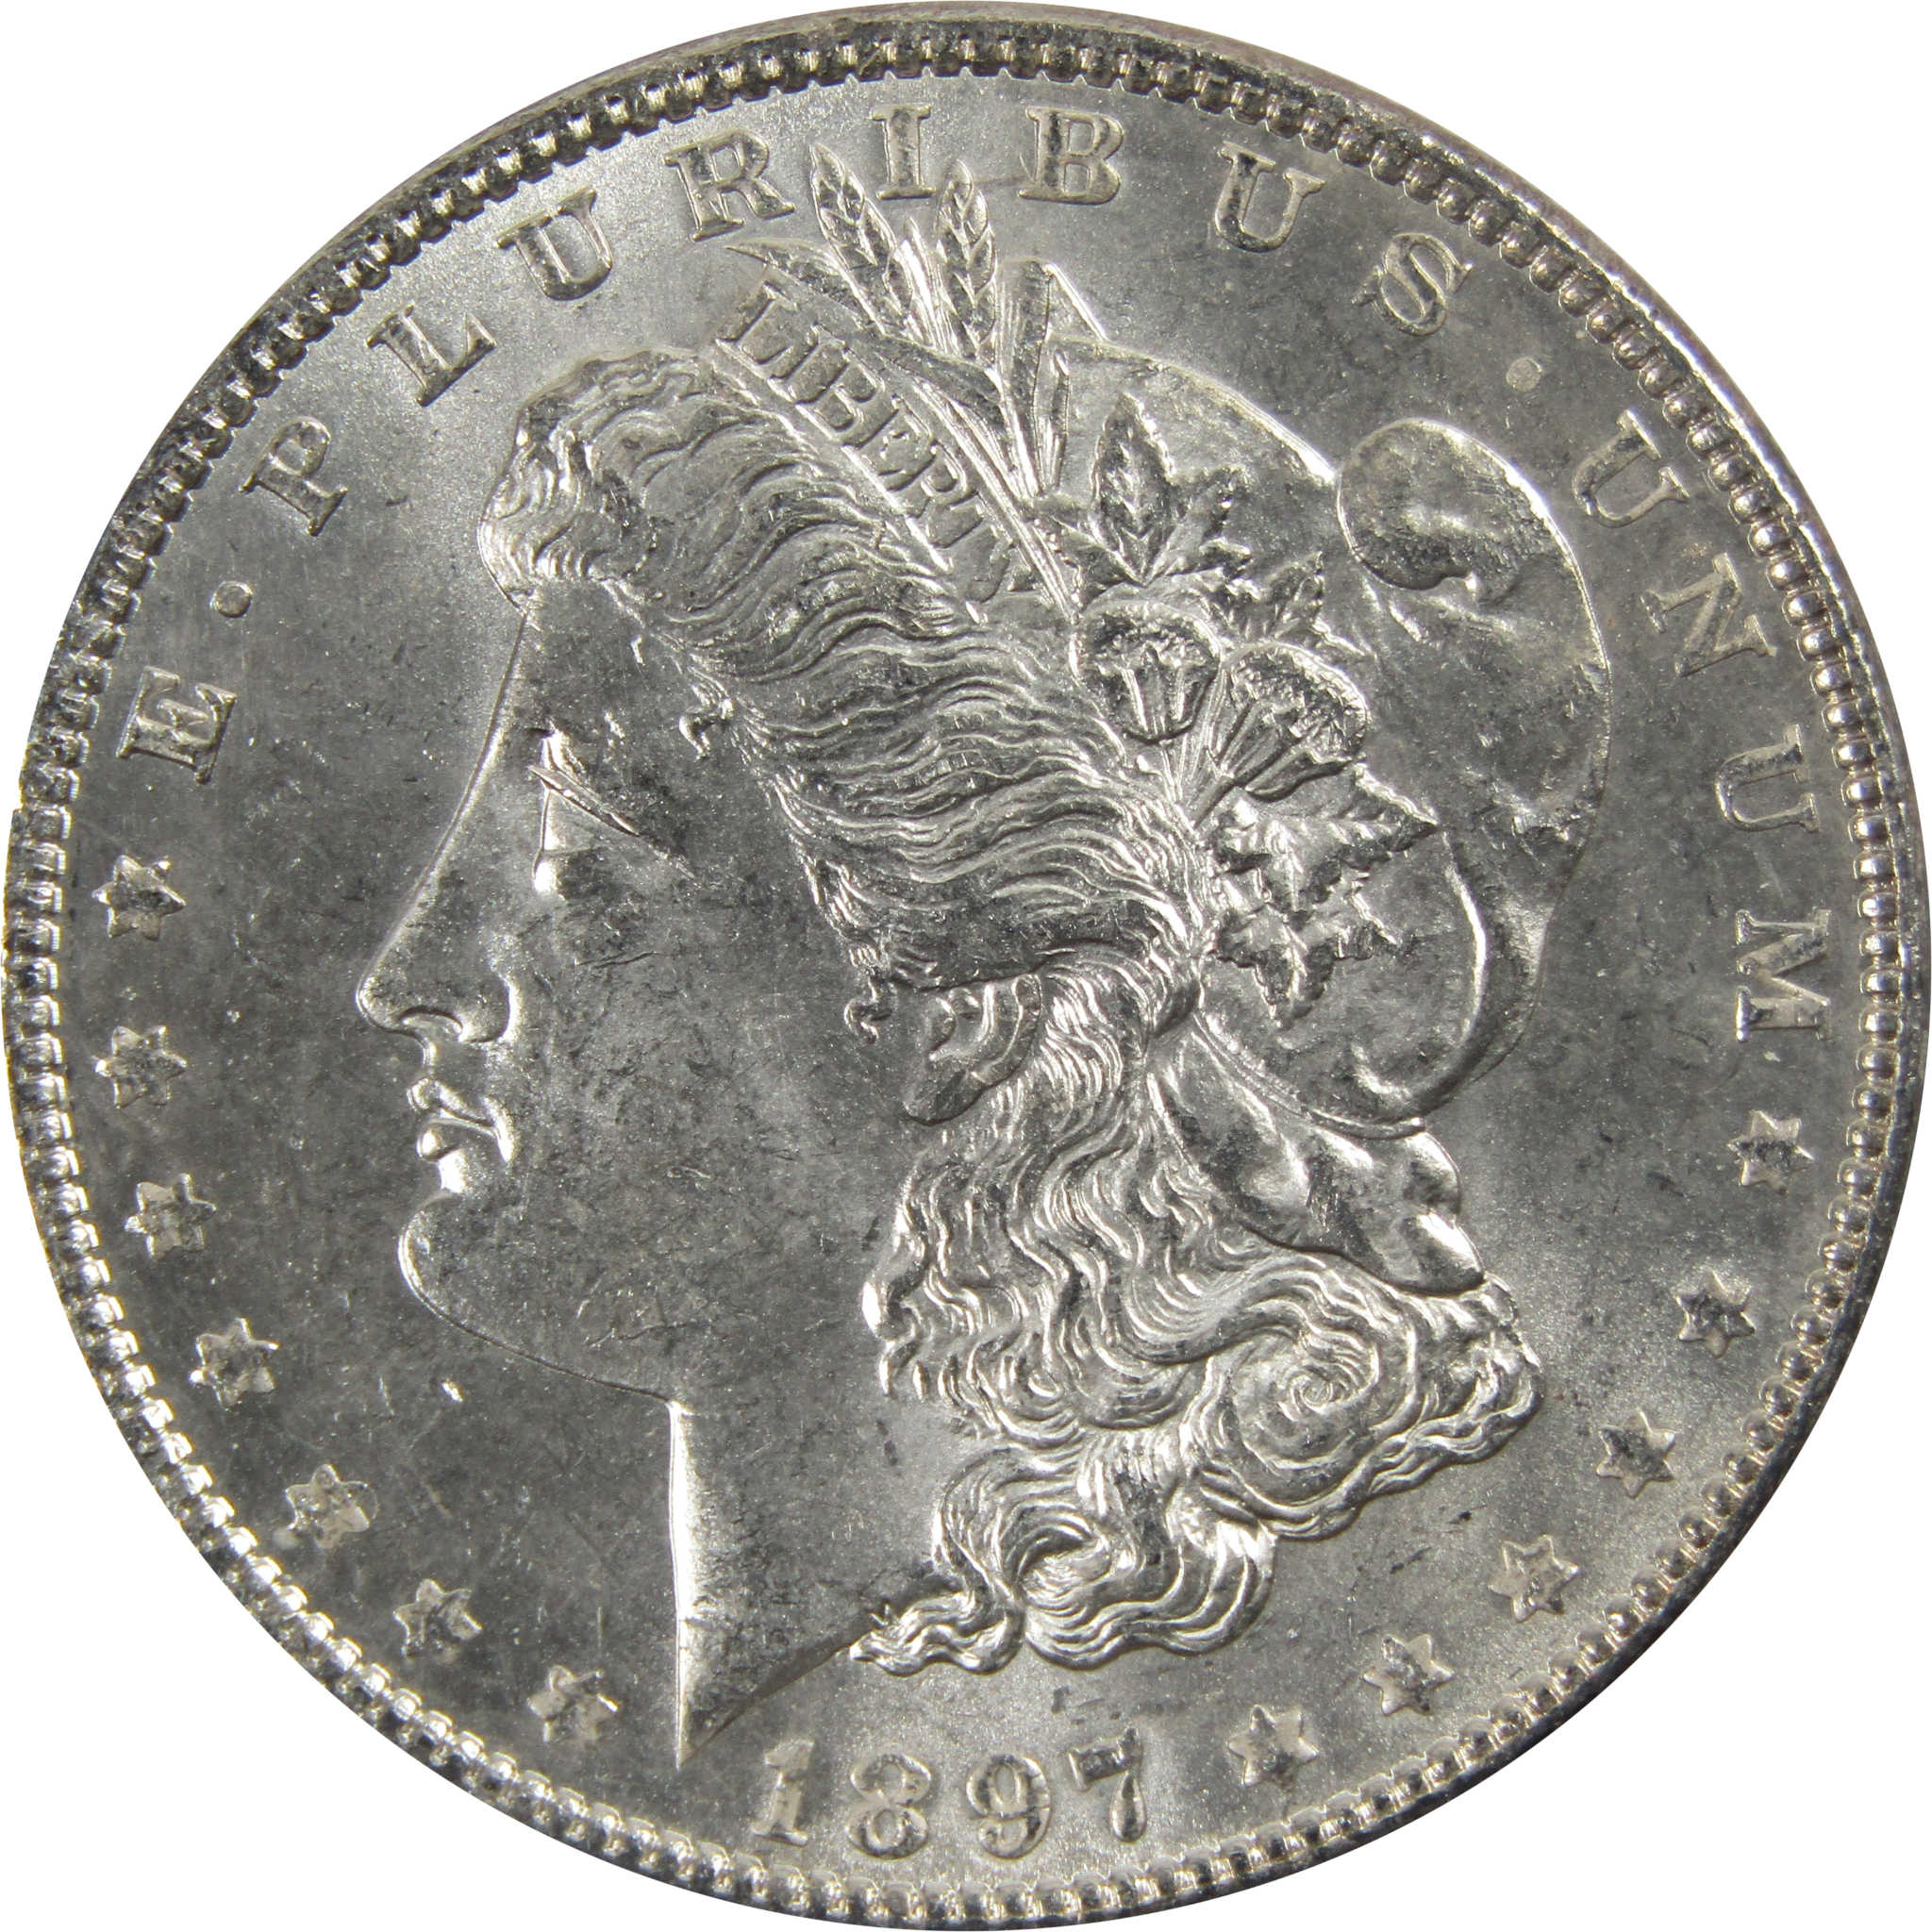 1897 Morgan Dollar BU Uncirculated 90% Silver $1 Coin SKU:I5159 - Morgan coin - Morgan silver dollar - Morgan silver dollar for sale - Profile Coins &amp; Collectibles